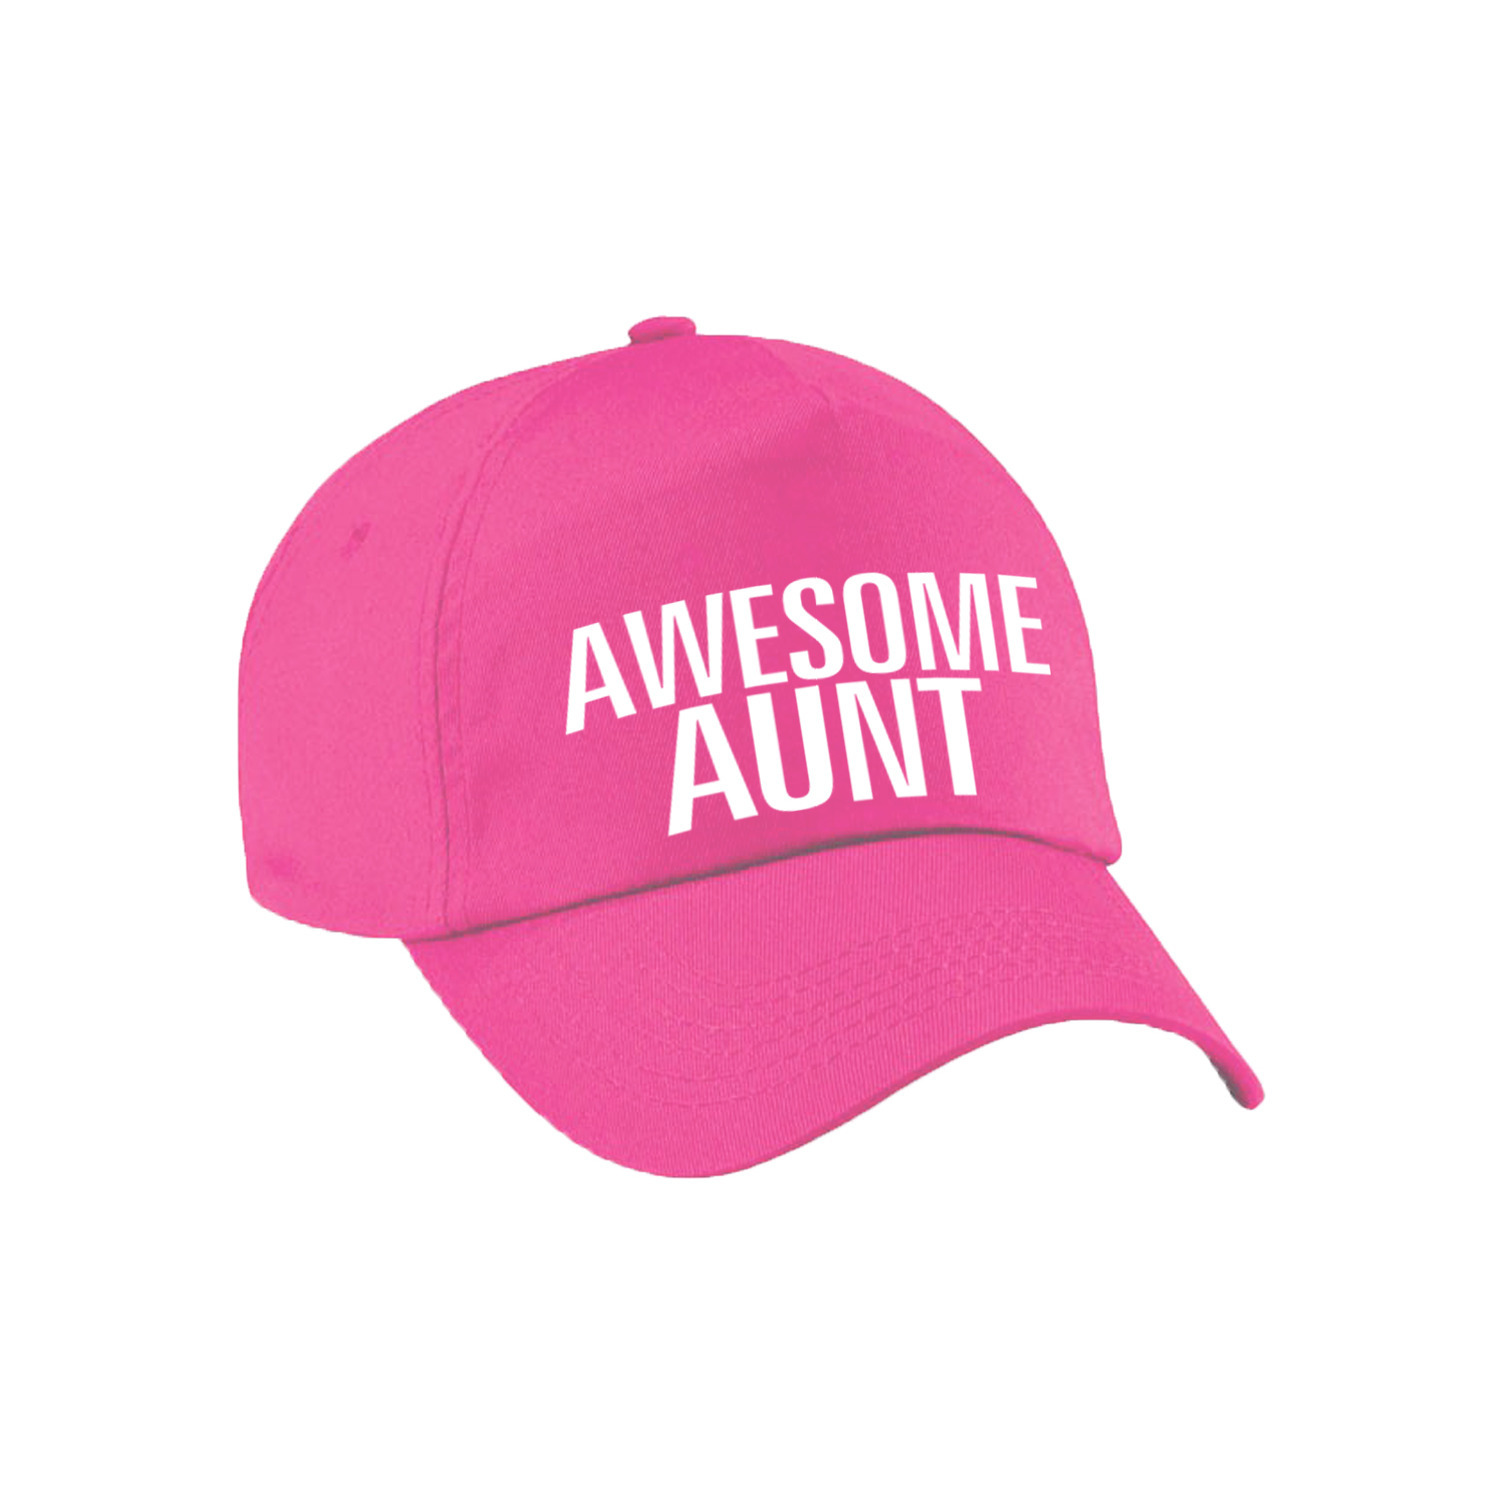 Awesome aunt pet / cap voor tante roze voor dames